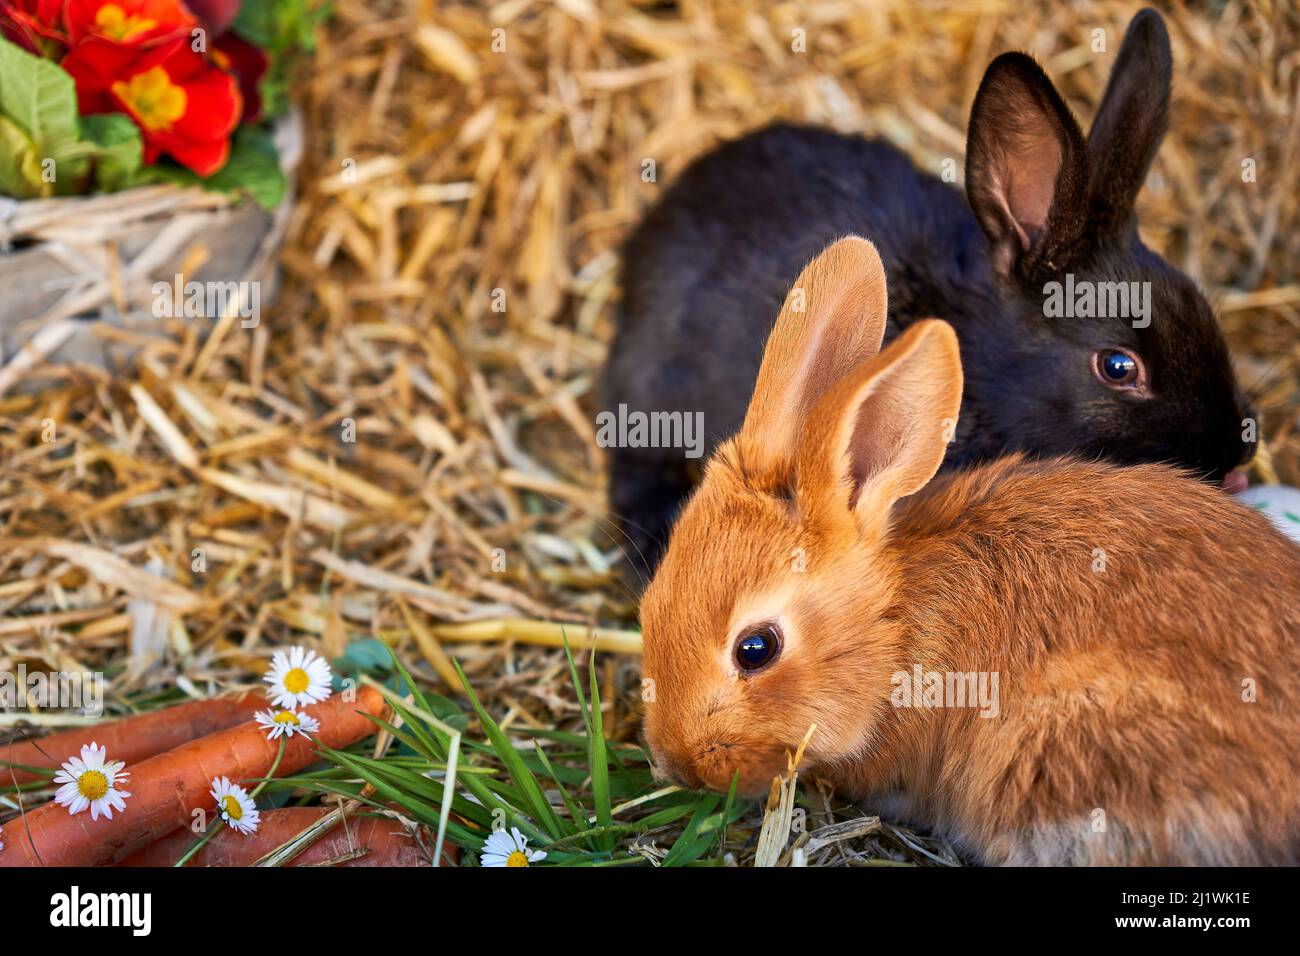 zwei junge Kaninchen auf Stroh mit Frühlingsblumen Ostereiern und Karotten Stock Photo